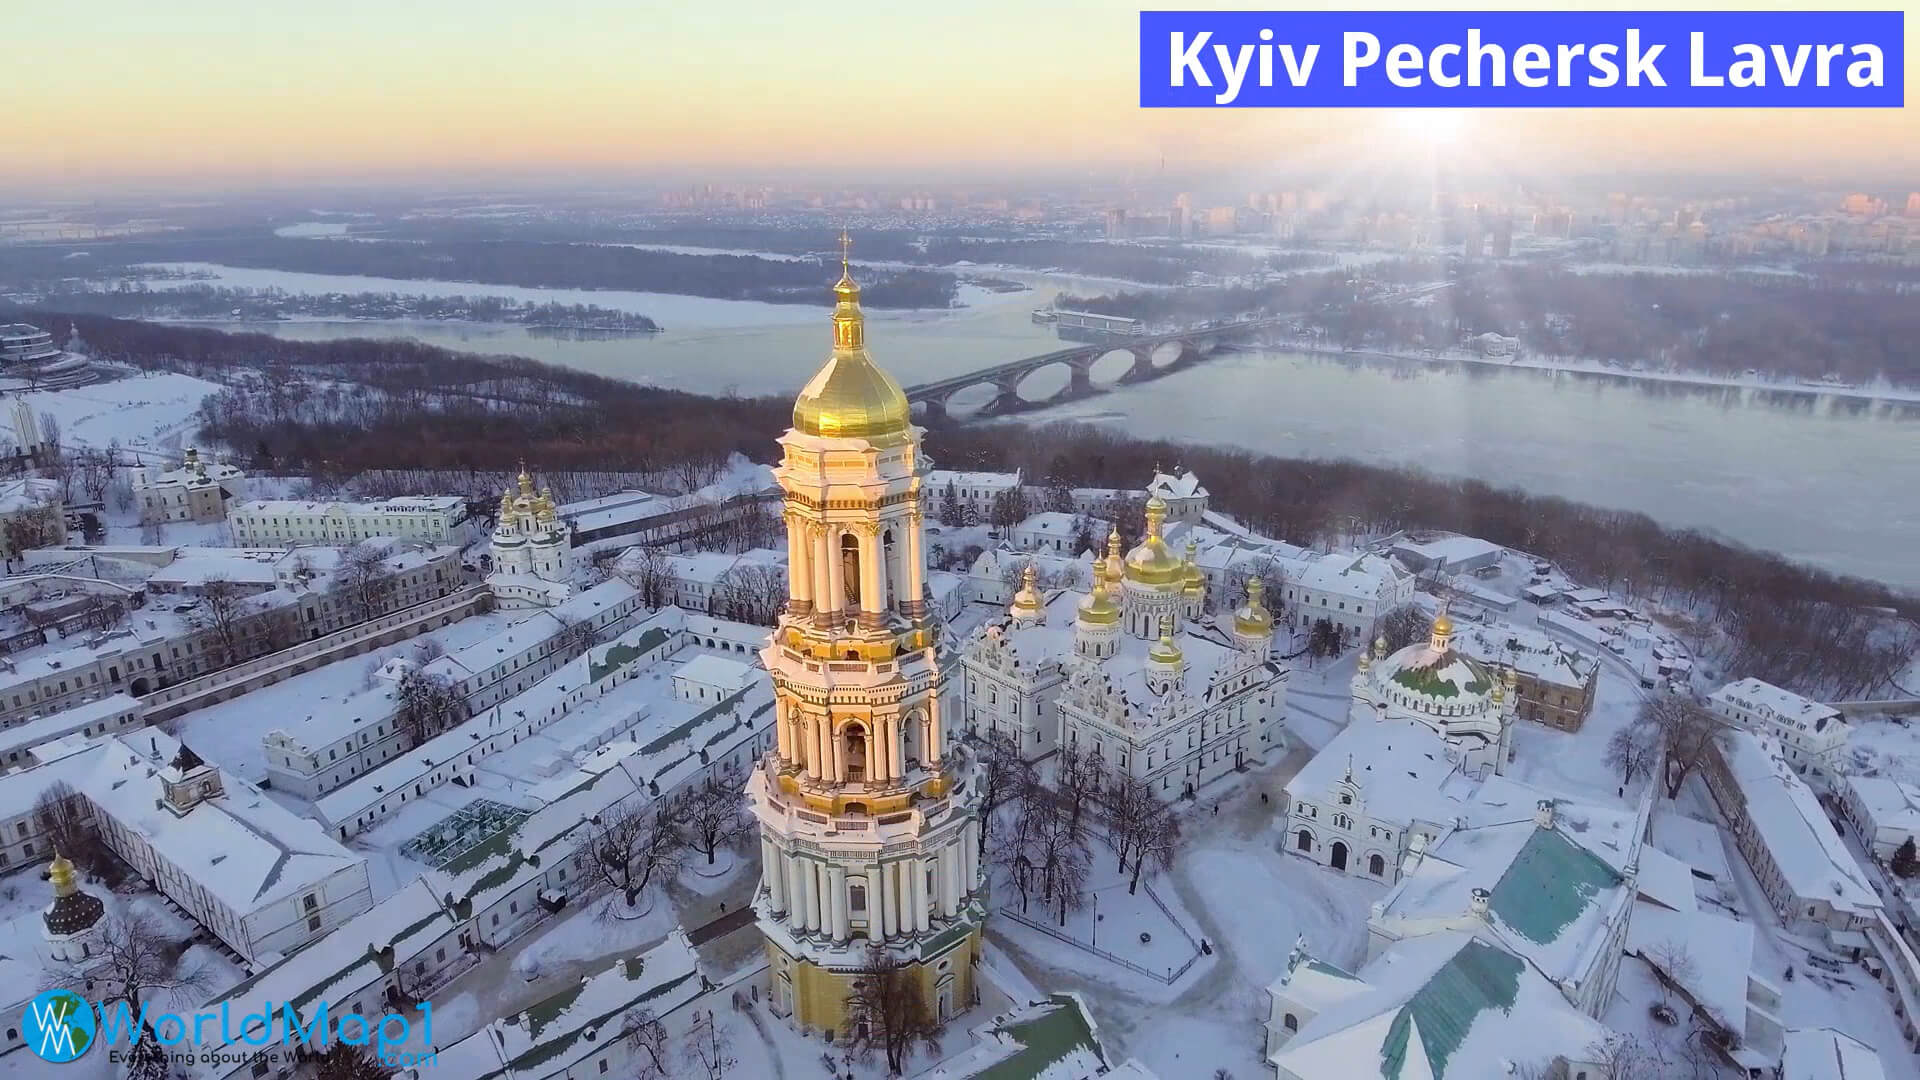 Pechersk Lavra in Kyiv